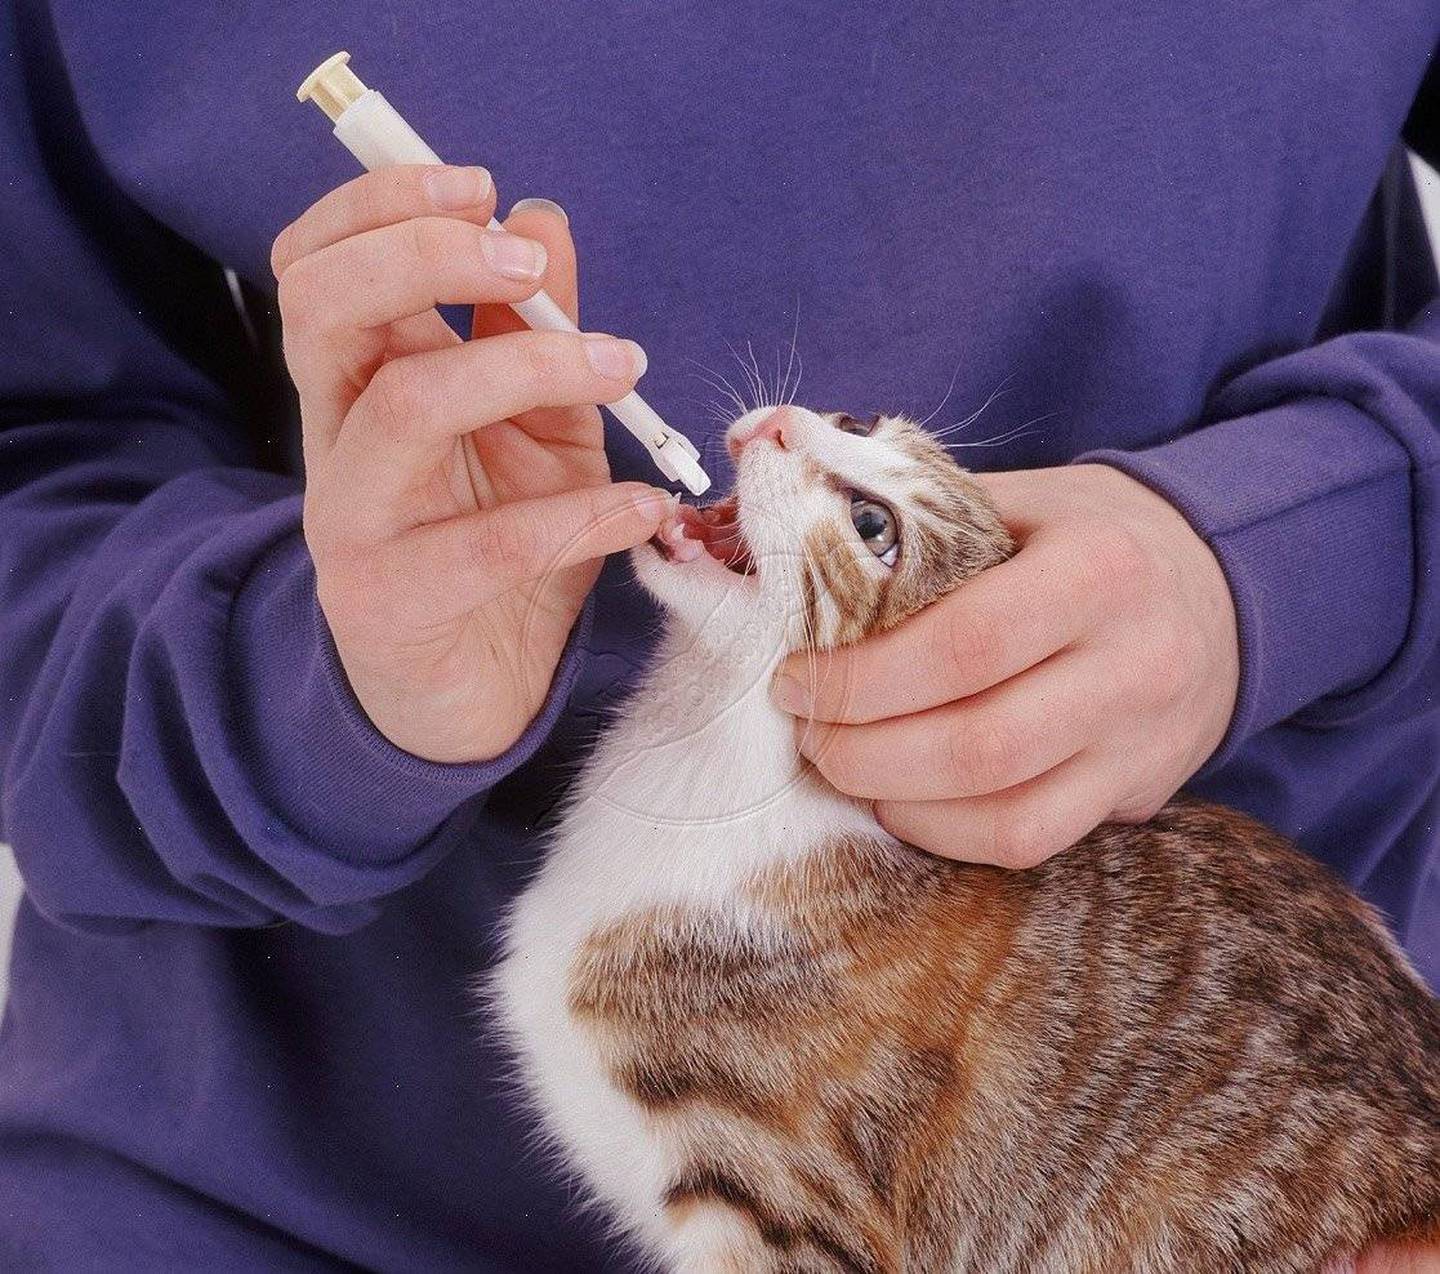 Как открыть рот кошке. Введение лекарств животным. Пероральное Введение животным. Введение лекарств через рот животным. Шприц для лекарств для животных.